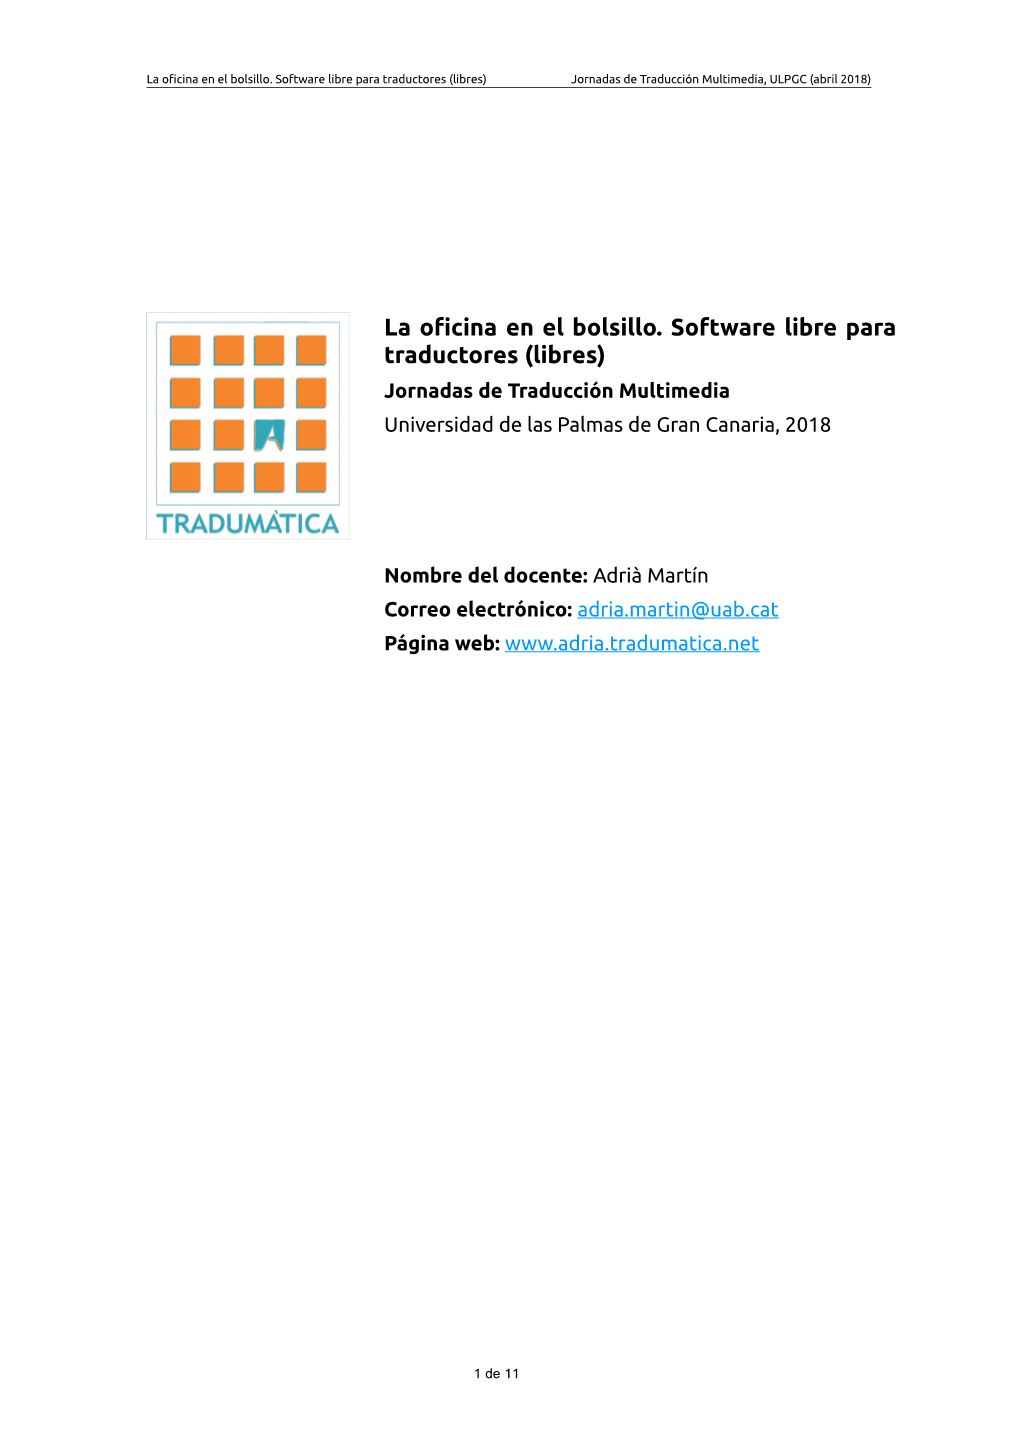 La Oficina En El Bolsillo. Software Libre Para Traductores (Libres) Jornadas De Traducción Multimedia, ULPGC (Abril 2018)